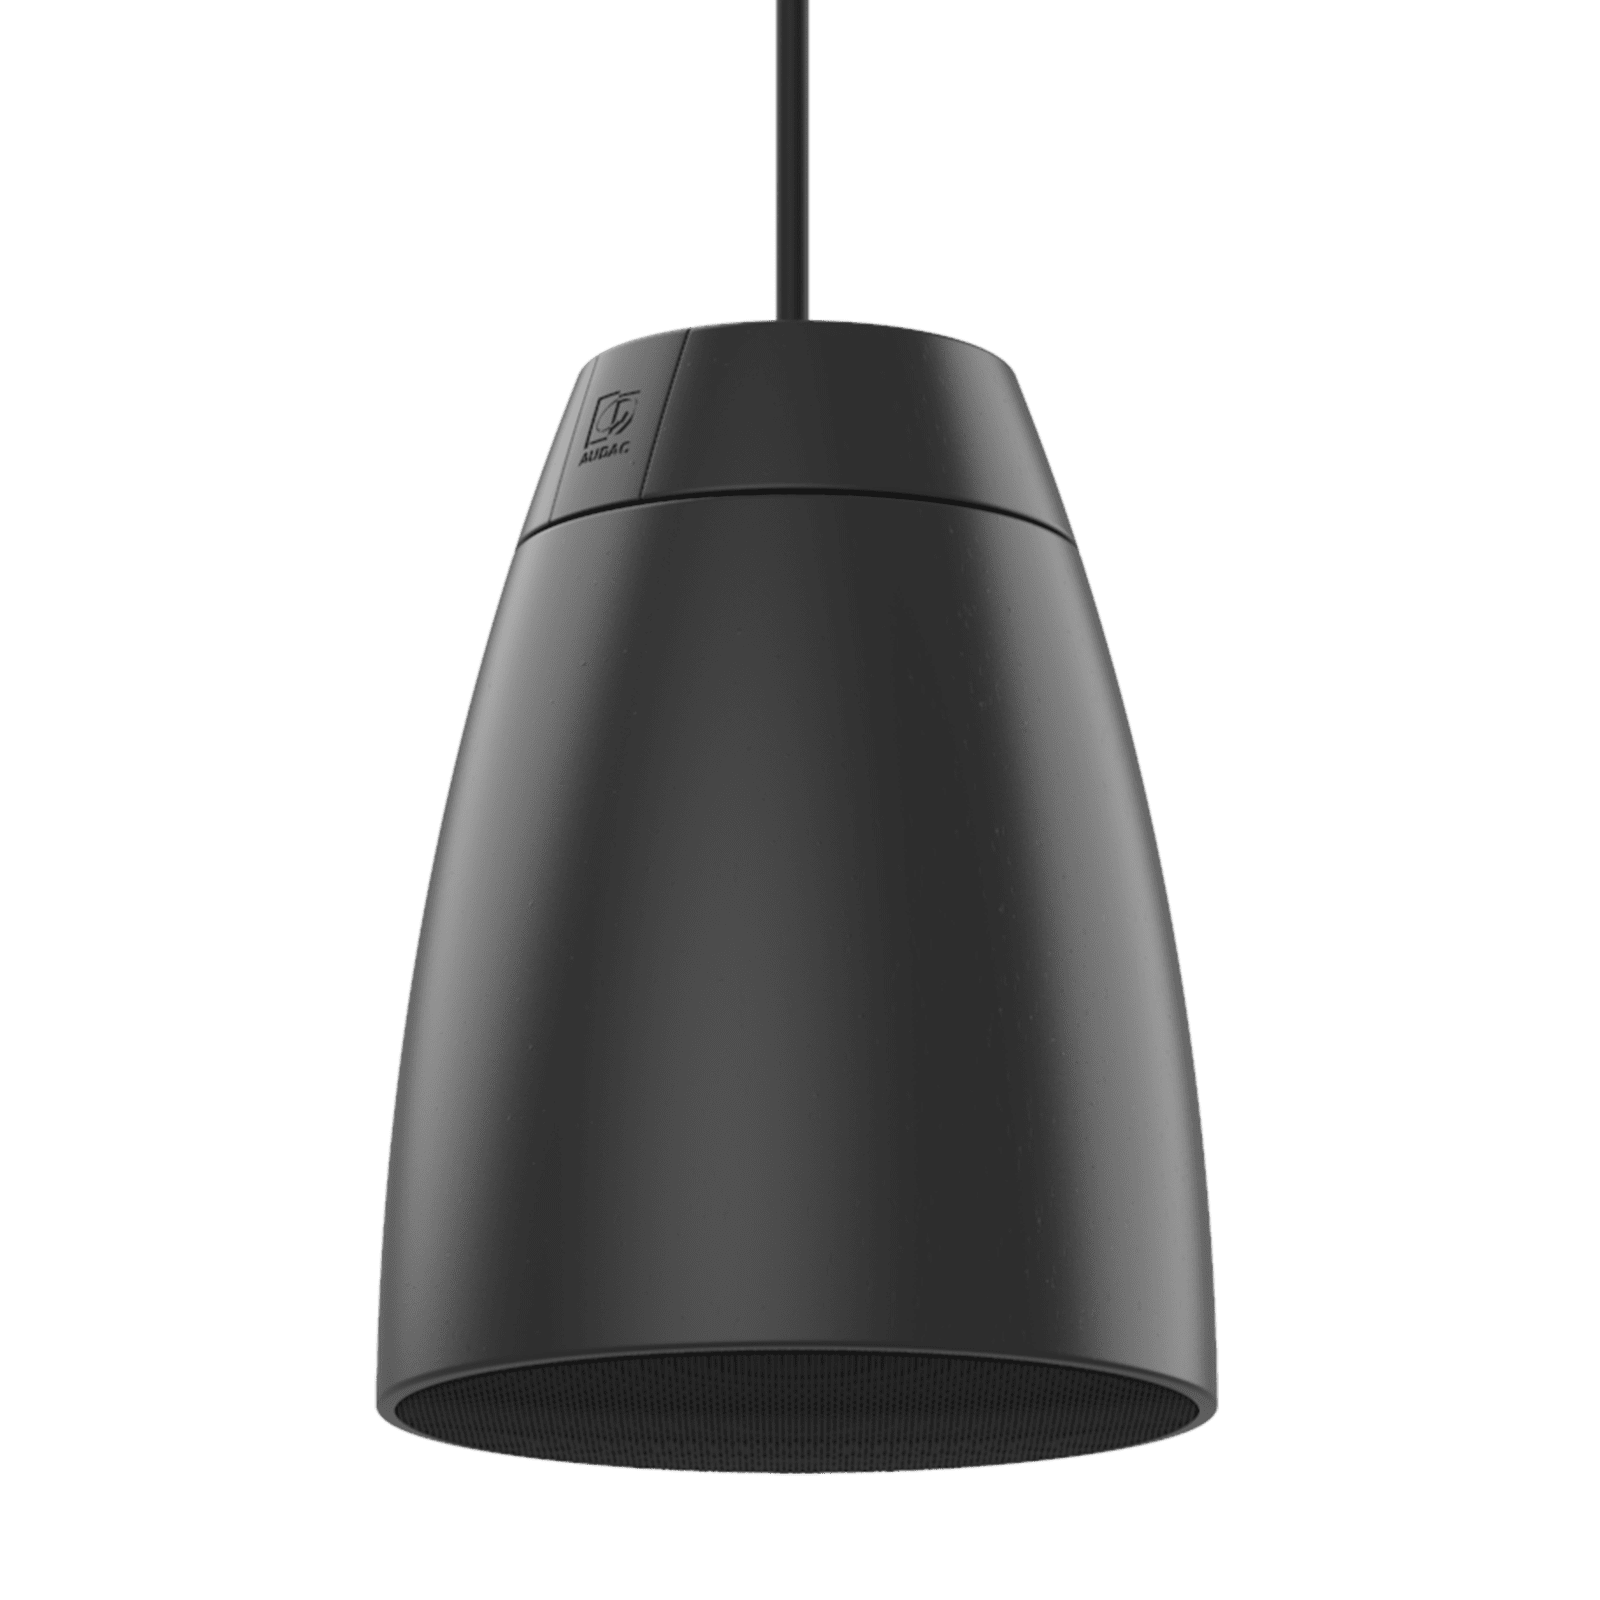 Audac Introduces New Design Speaker Series 'ALTI' 3